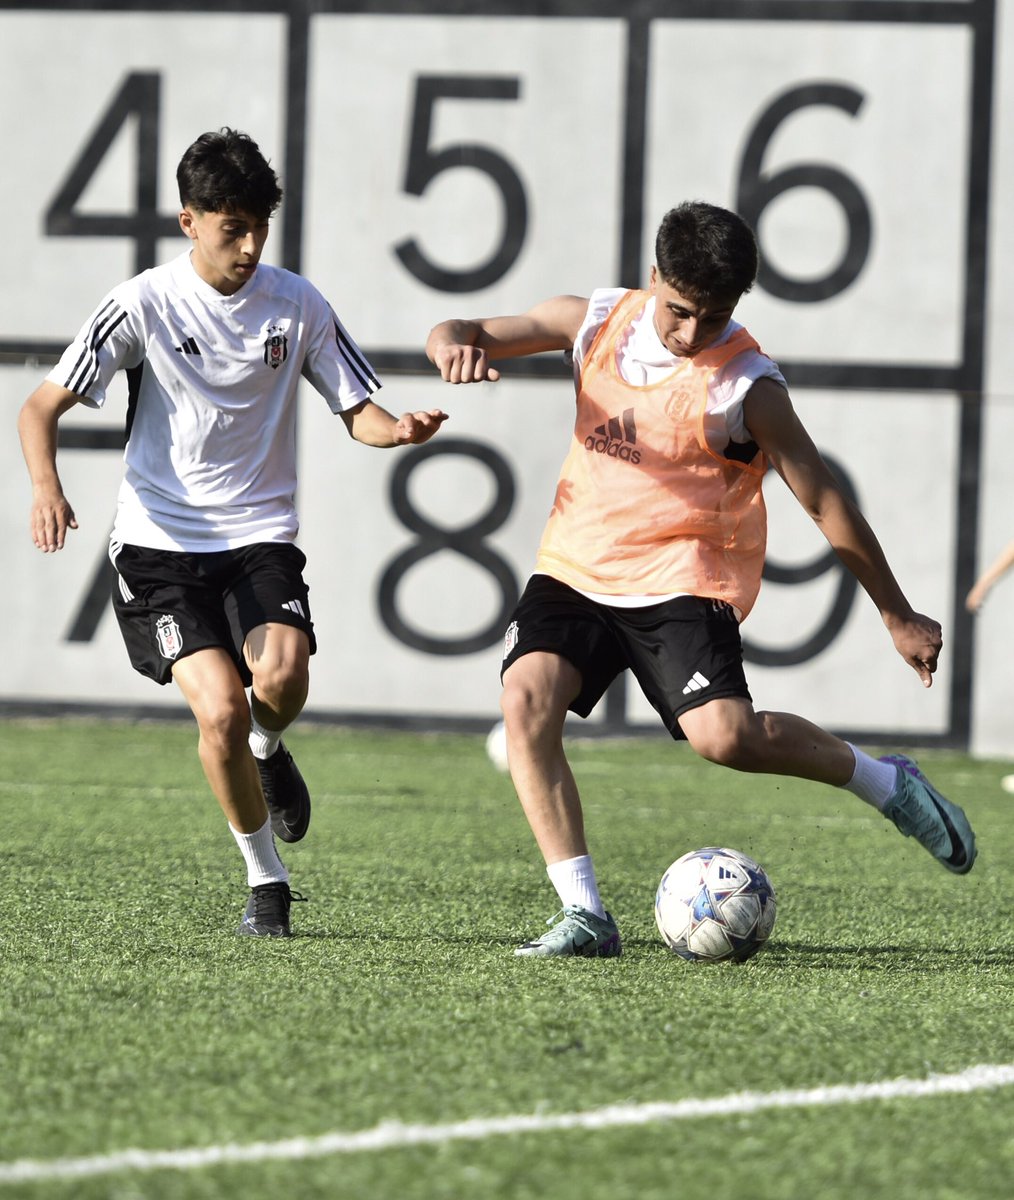 Beşiktaş Artaş U15 Akademi Takımımız, U15 Gelişim Ligi Yarı Final maçı hazırlıklarına devam etti. 💪🏻 #GeleceğinKartalları 🦅